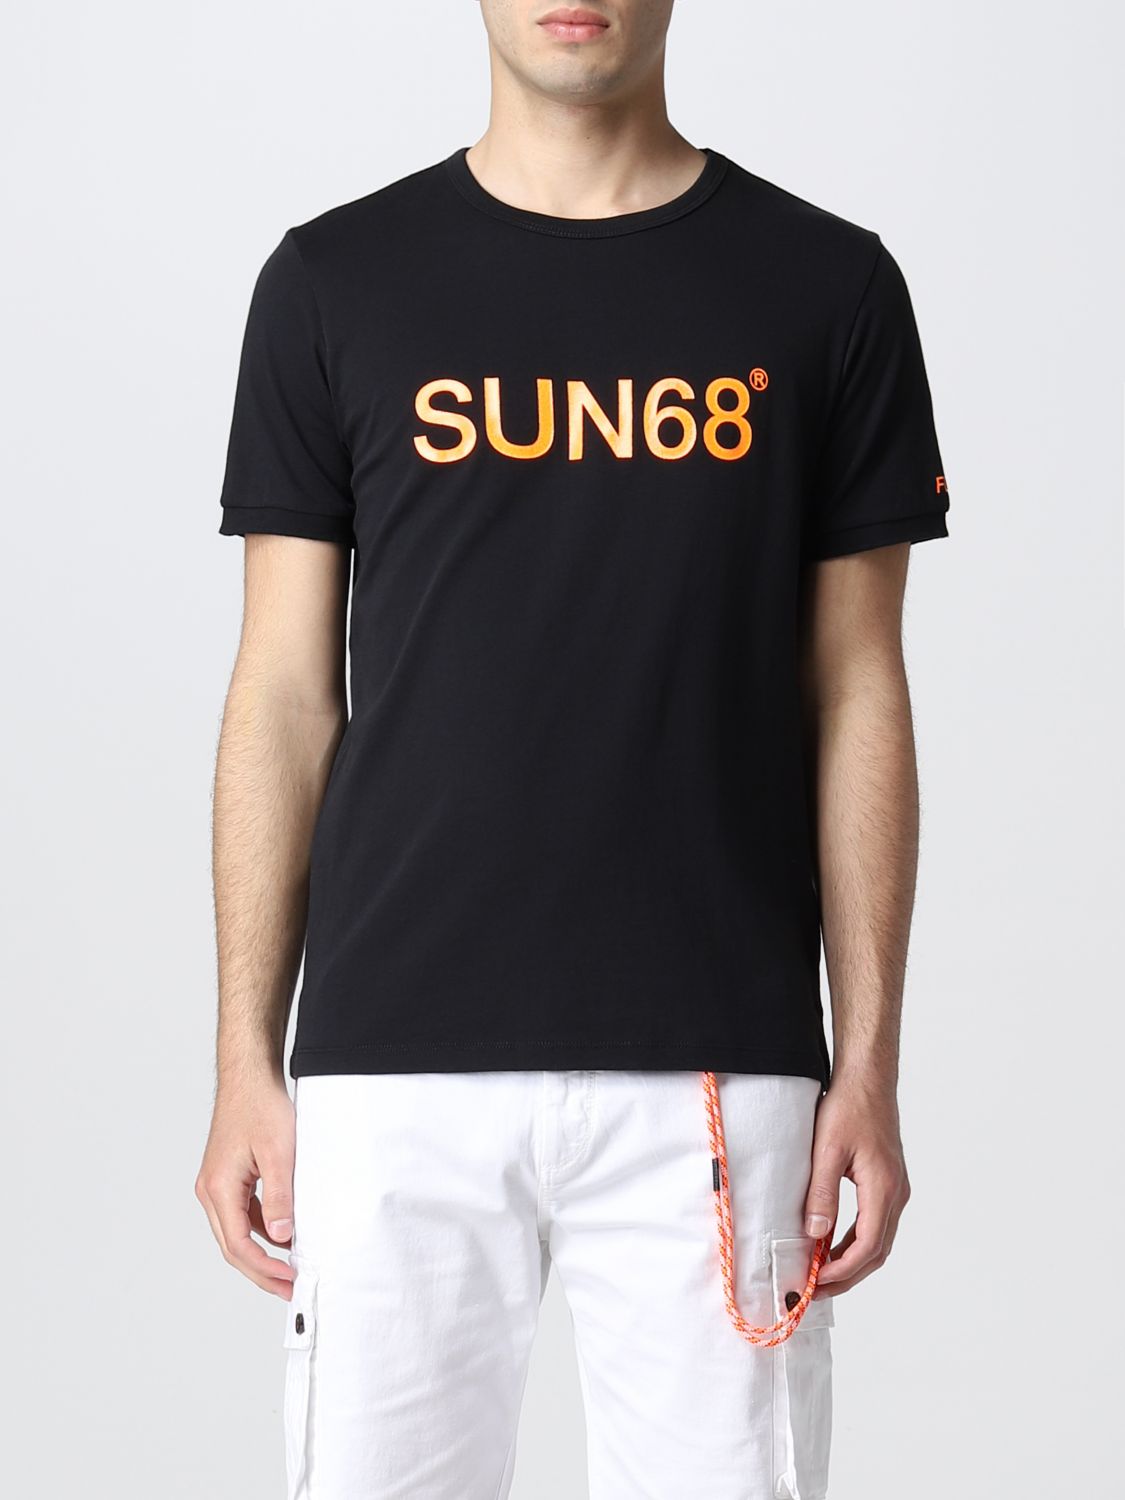 Tシャツ Sun 68: Tシャツ Sun 68 メンズ ブラック 1